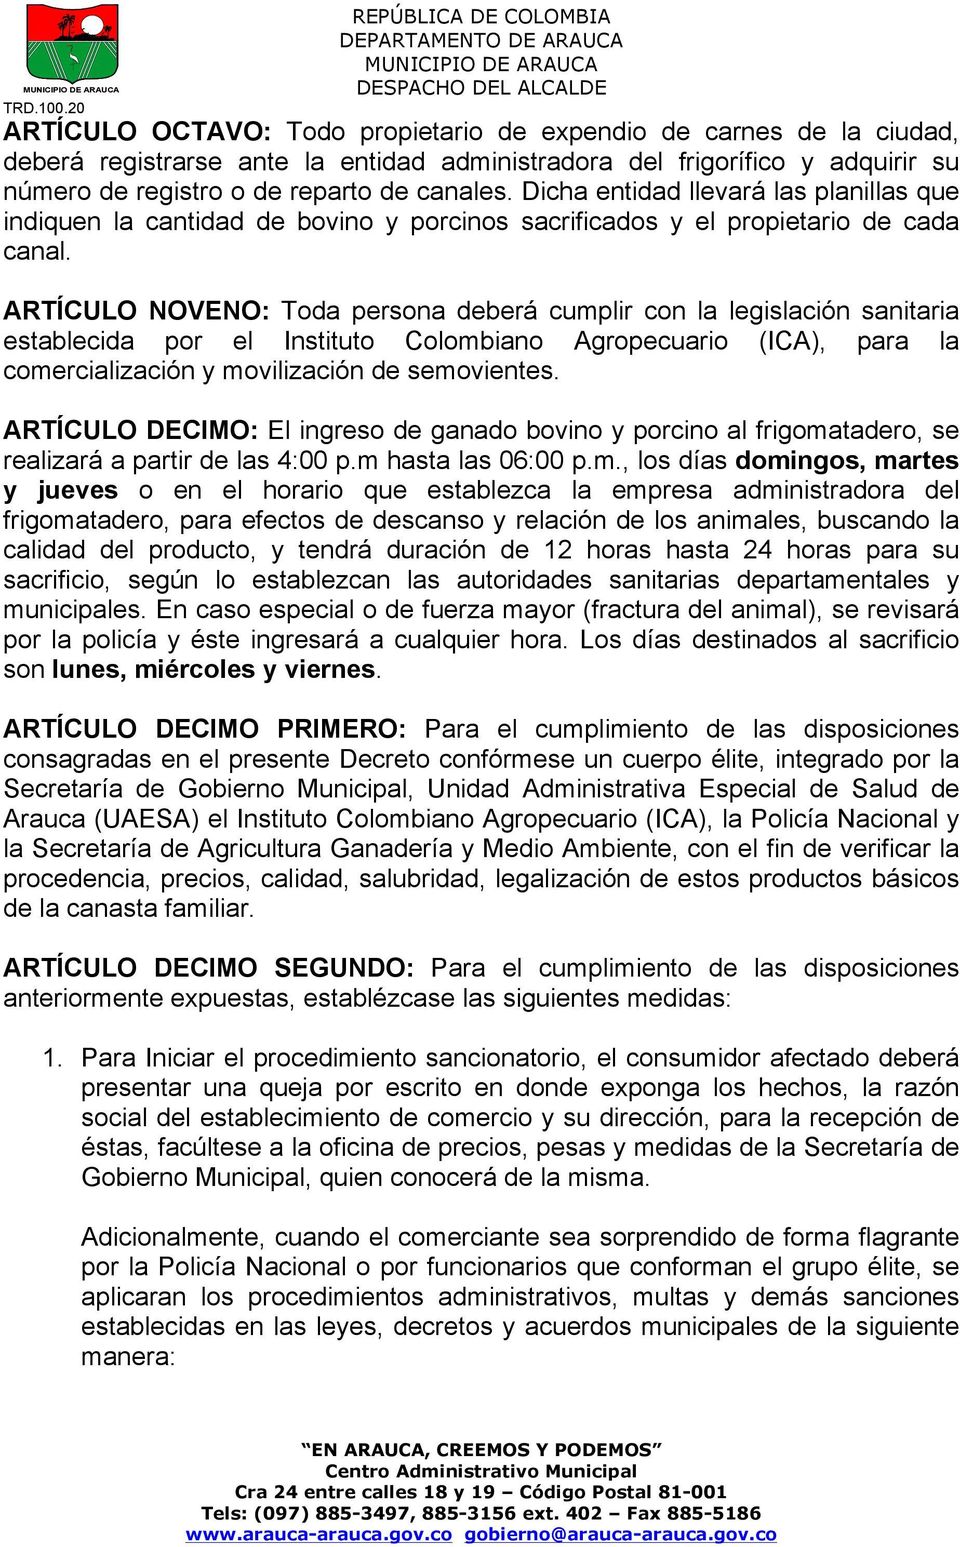 ARTÍCULO NOVENO: Toda persona deberá cumplir con la legislación sanitaria establecida por el Instituto Colombiano Agropecuario (ICA), para la comercialización y movilización de semovientes.